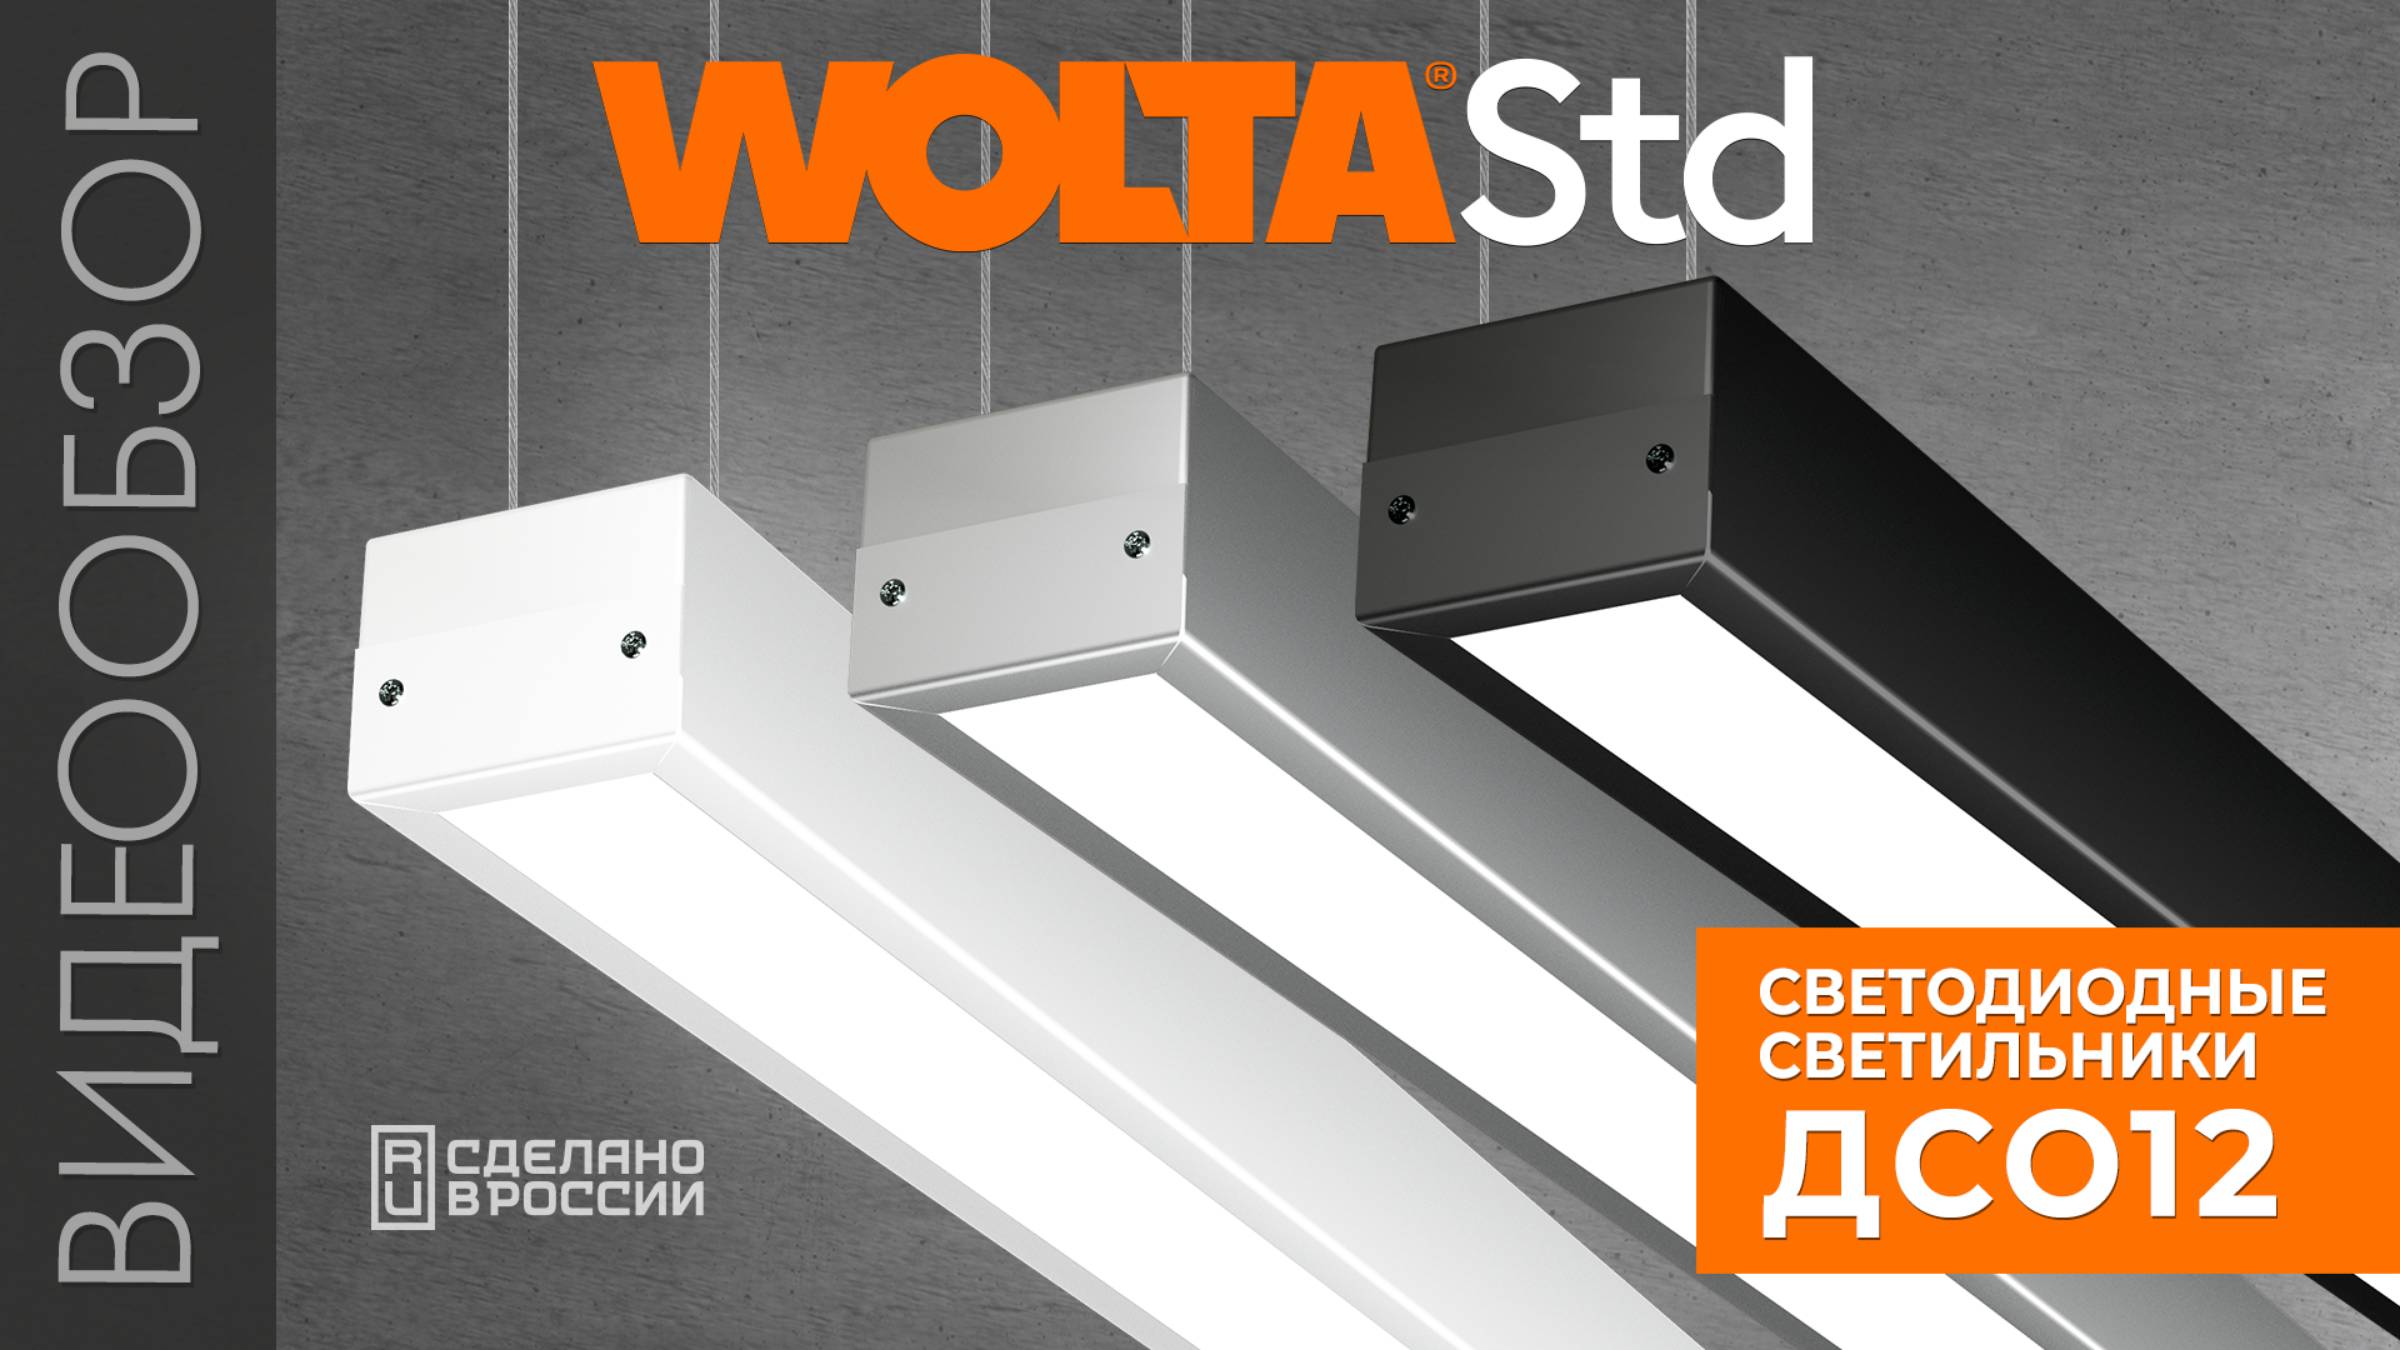 Видеообзор профильных светильников серии ДСО12 от WOLTA®Std!